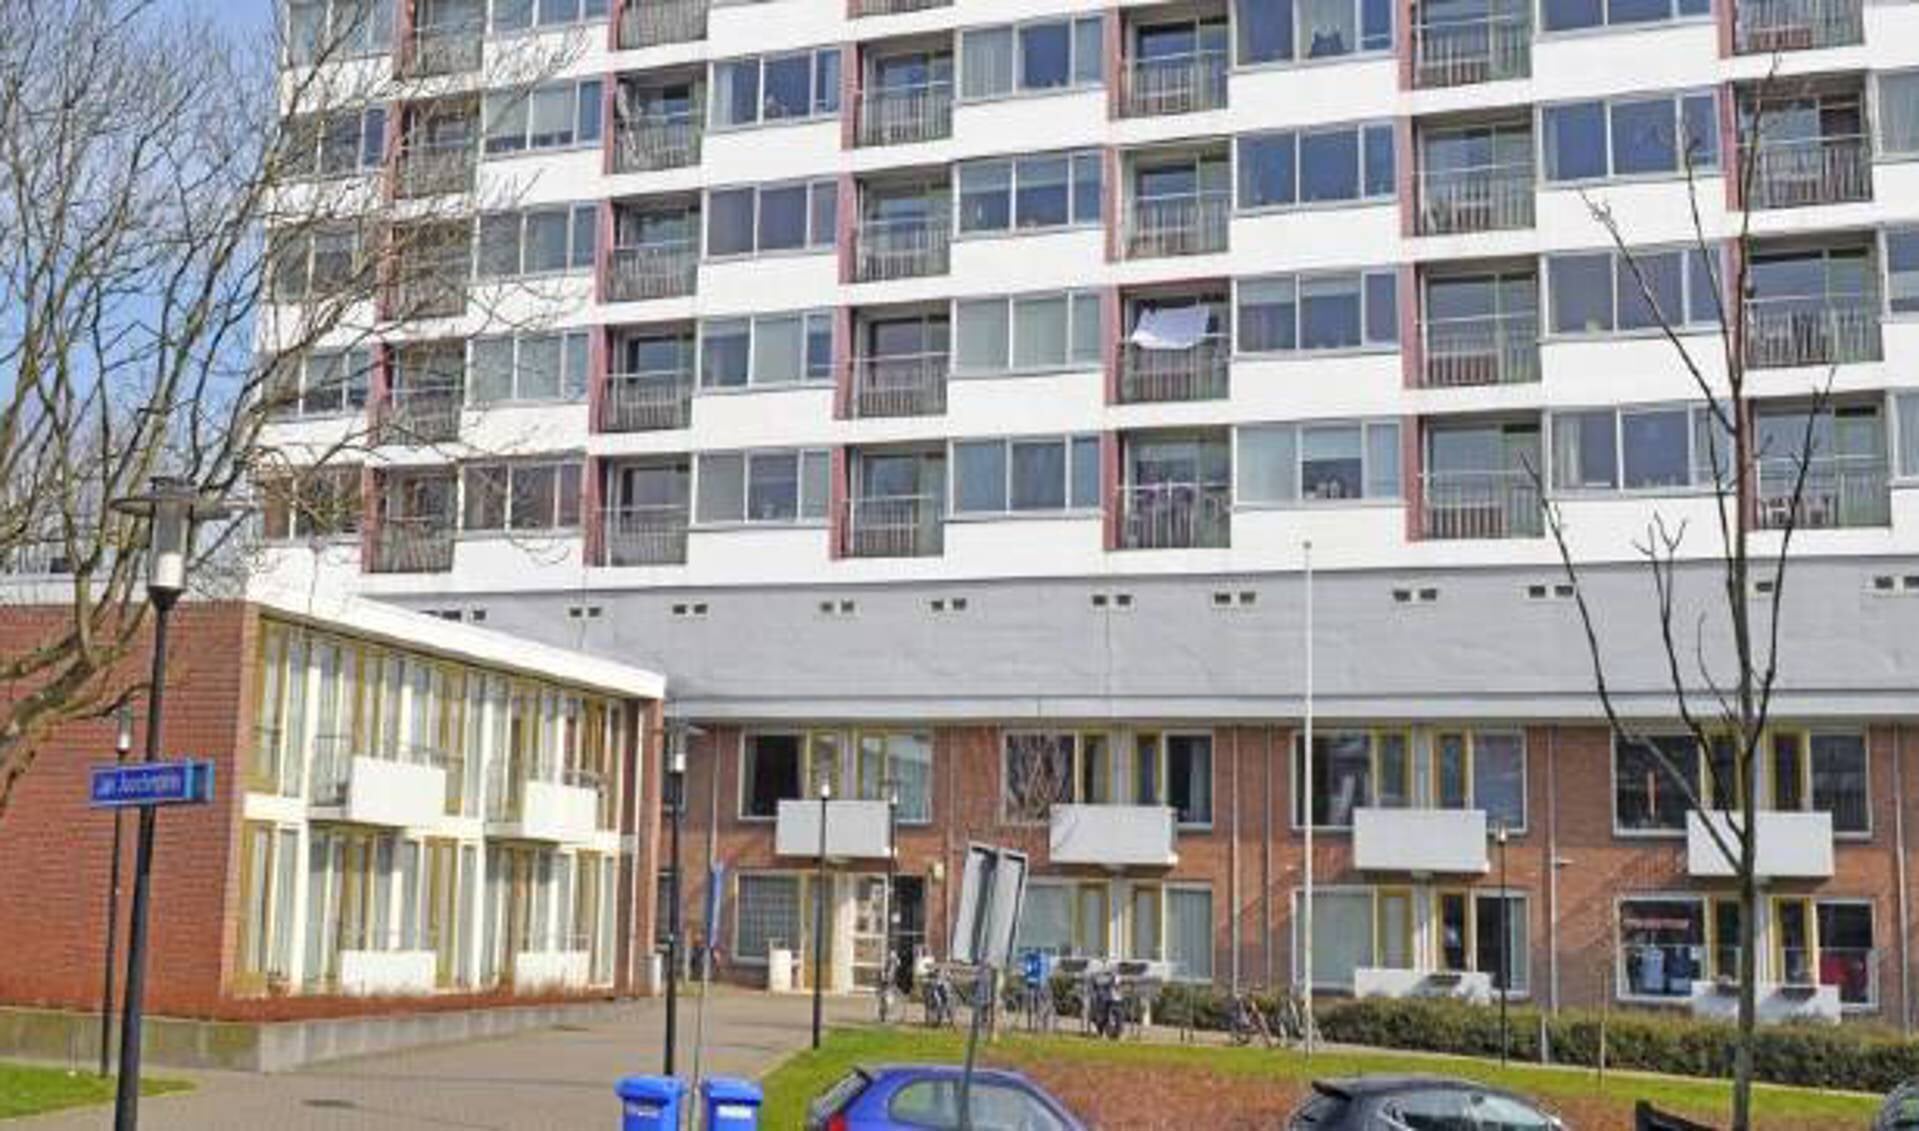 De torenflat van de Bieslandsekade. (foto: www.woonbron.nl)